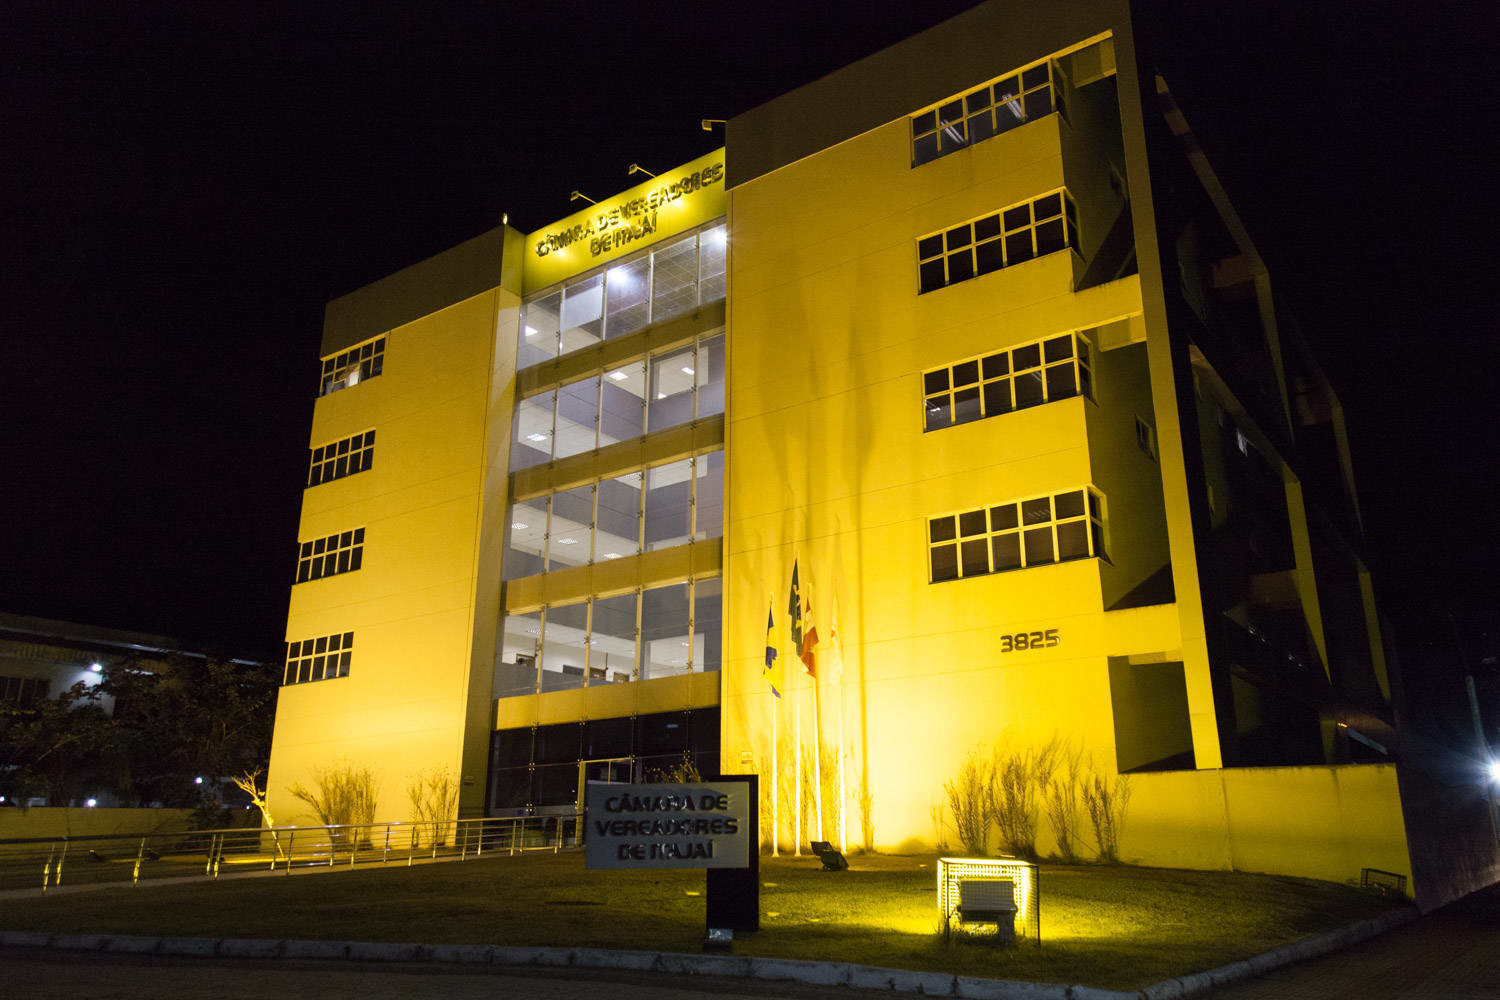 #PraCegoVer a foto mostra a fachada da
Câmara de Itajaí à noite, iluminada com a cor
amarela.